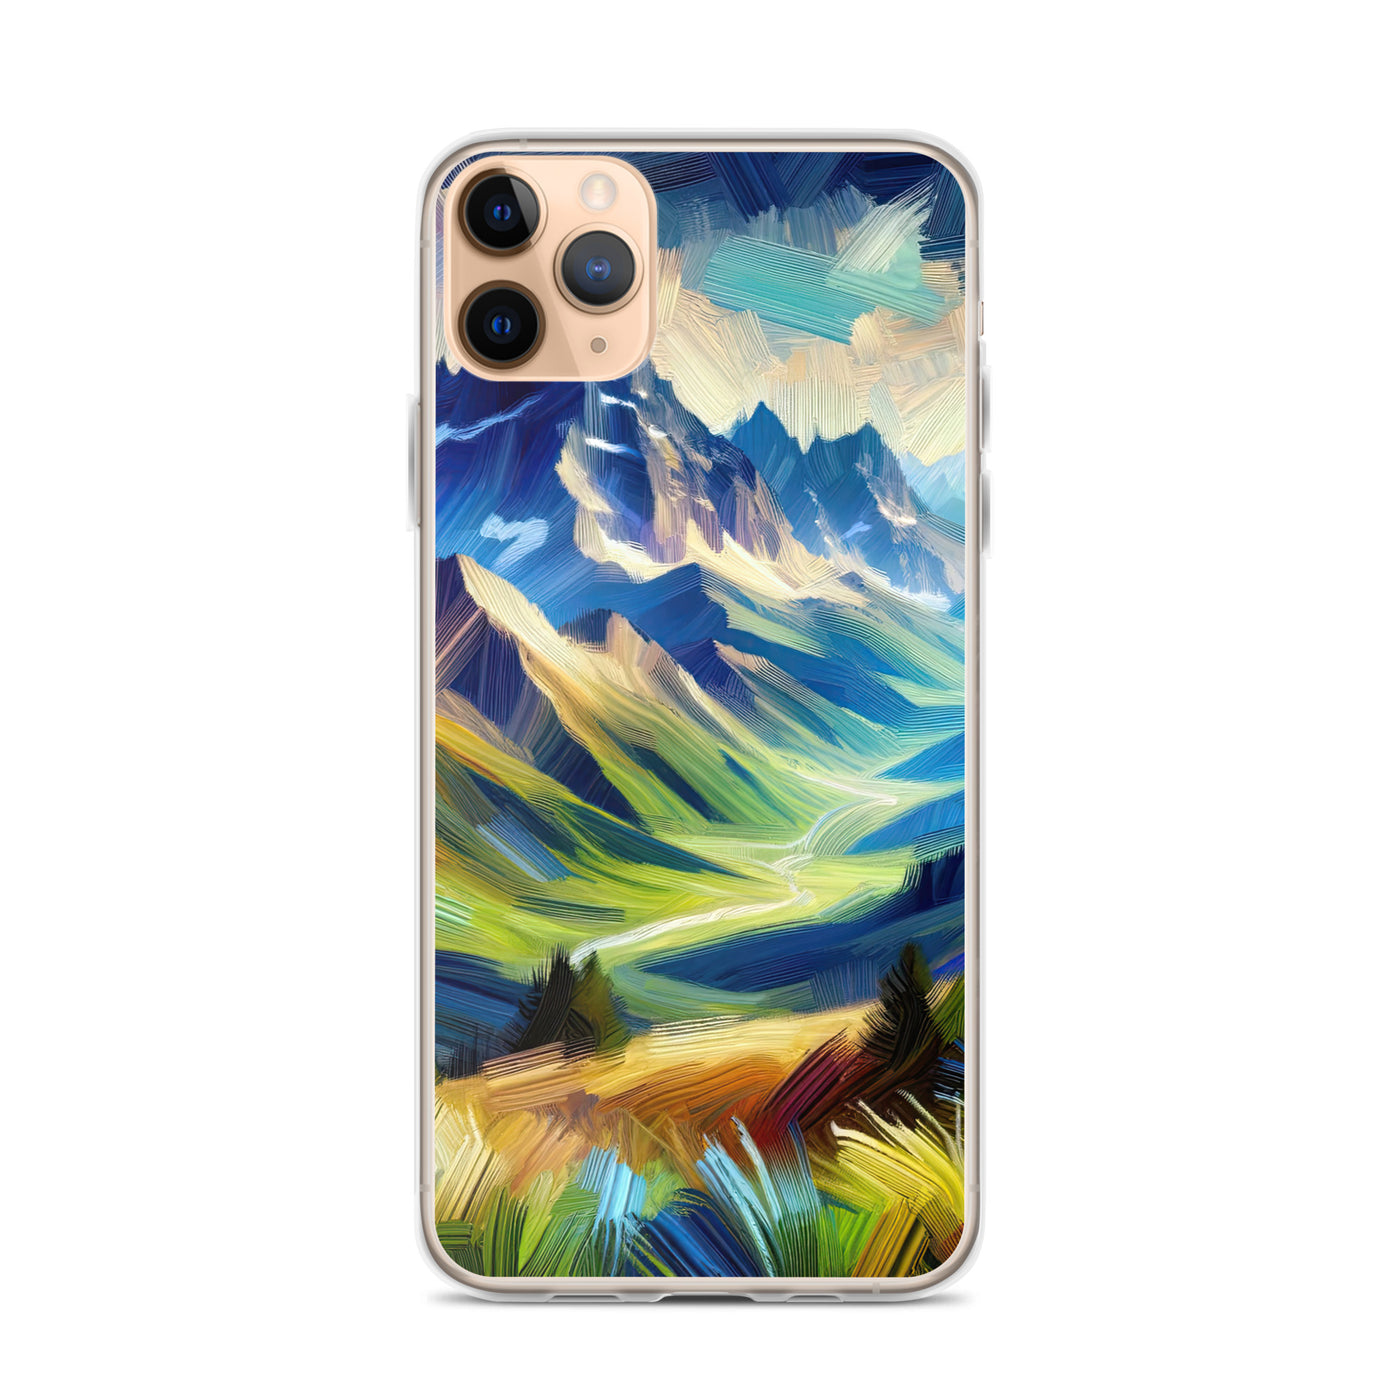 Impressionistische Alpen, lebendige Farbtupfer und Lichteffekte - iPhone Schutzhülle (durchsichtig) berge xxx yyy zzz iPhone 11 Pro Max